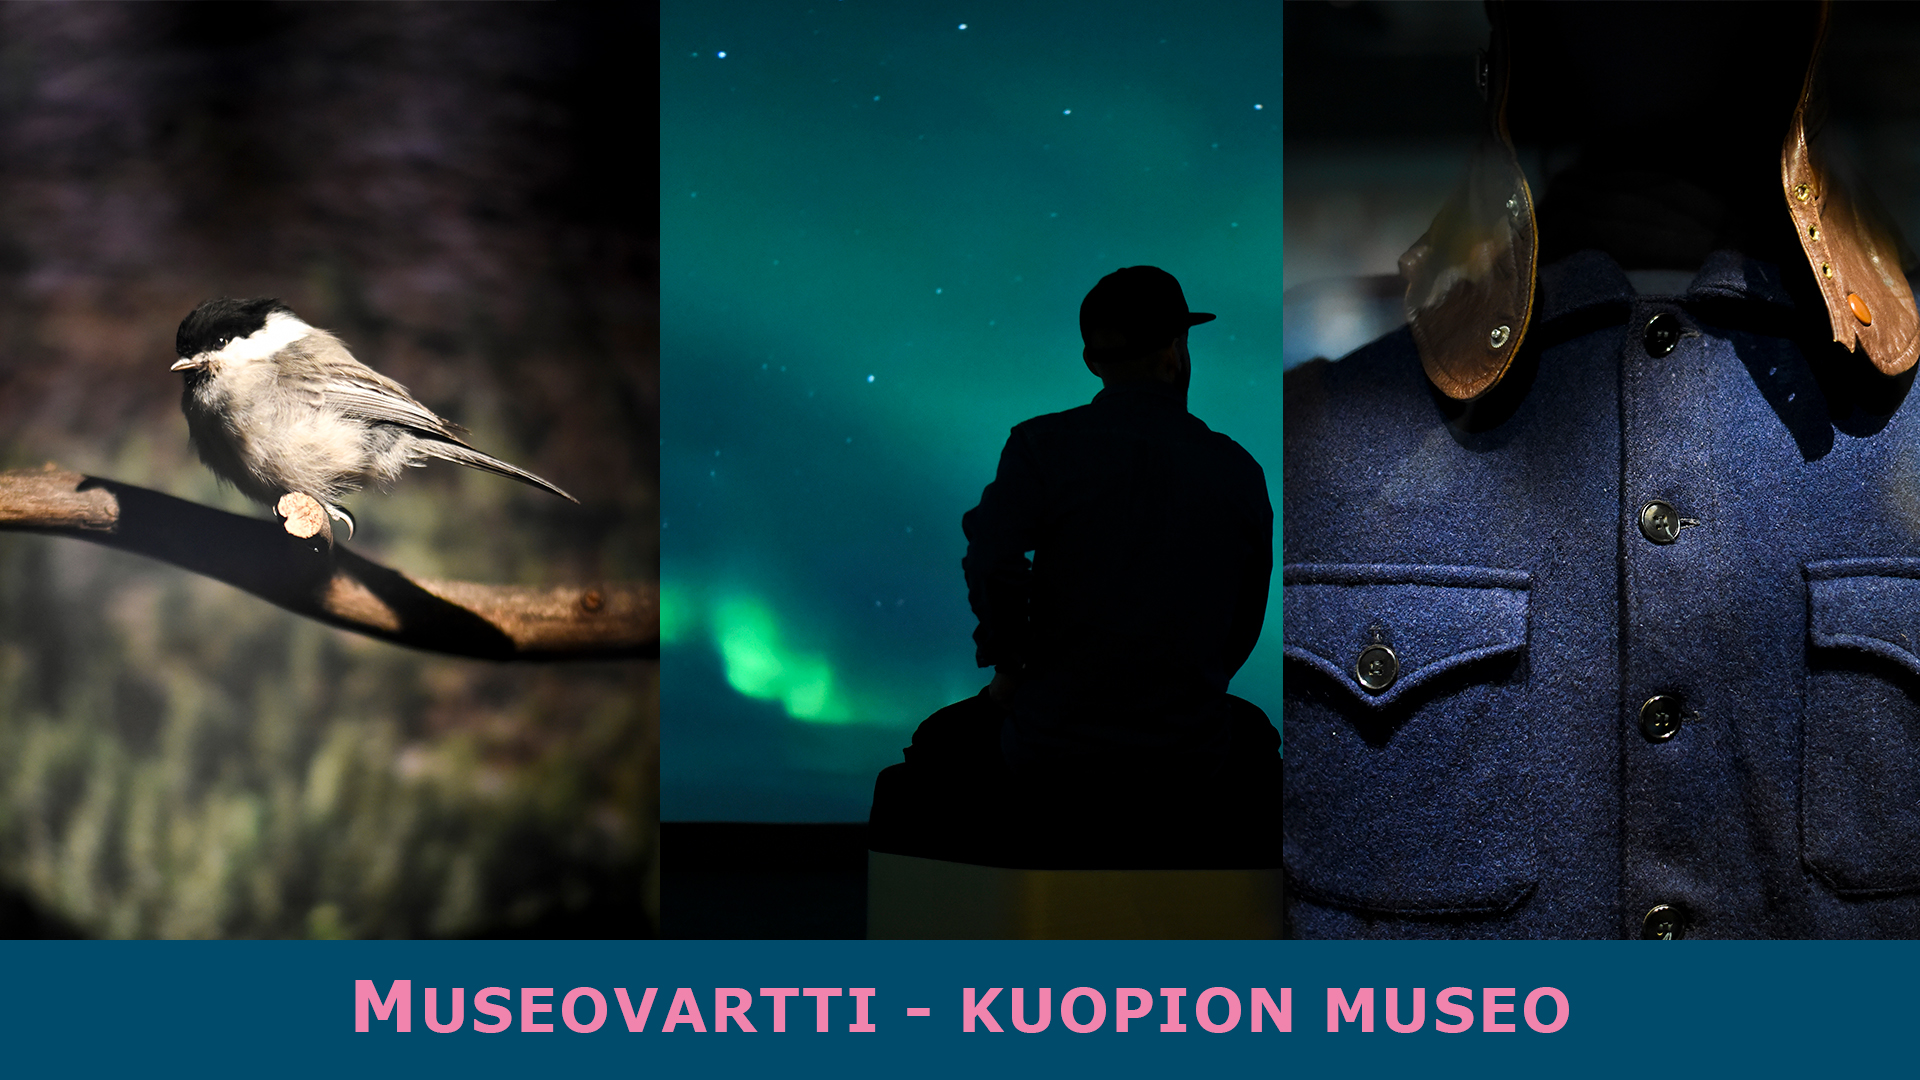 Kuvituskuva. Teksti museovartti - Kuopion museo.